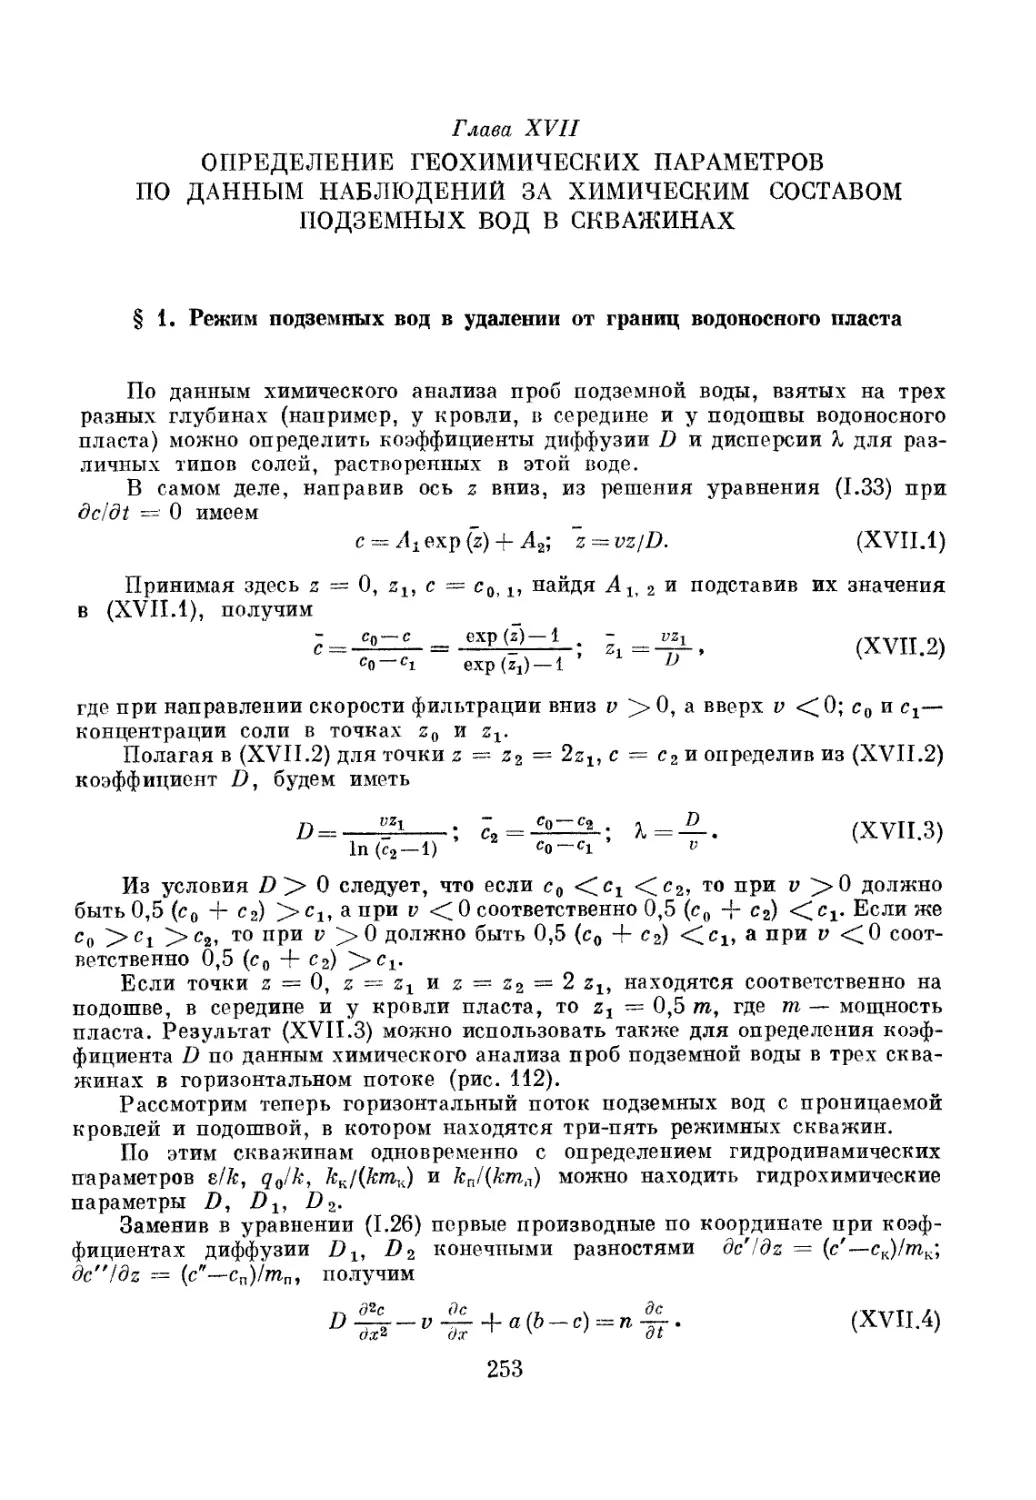 Глава XVII. Определение геохимических параметров по данным наблюдений за химическим составом подземных вод в скважинах, 253